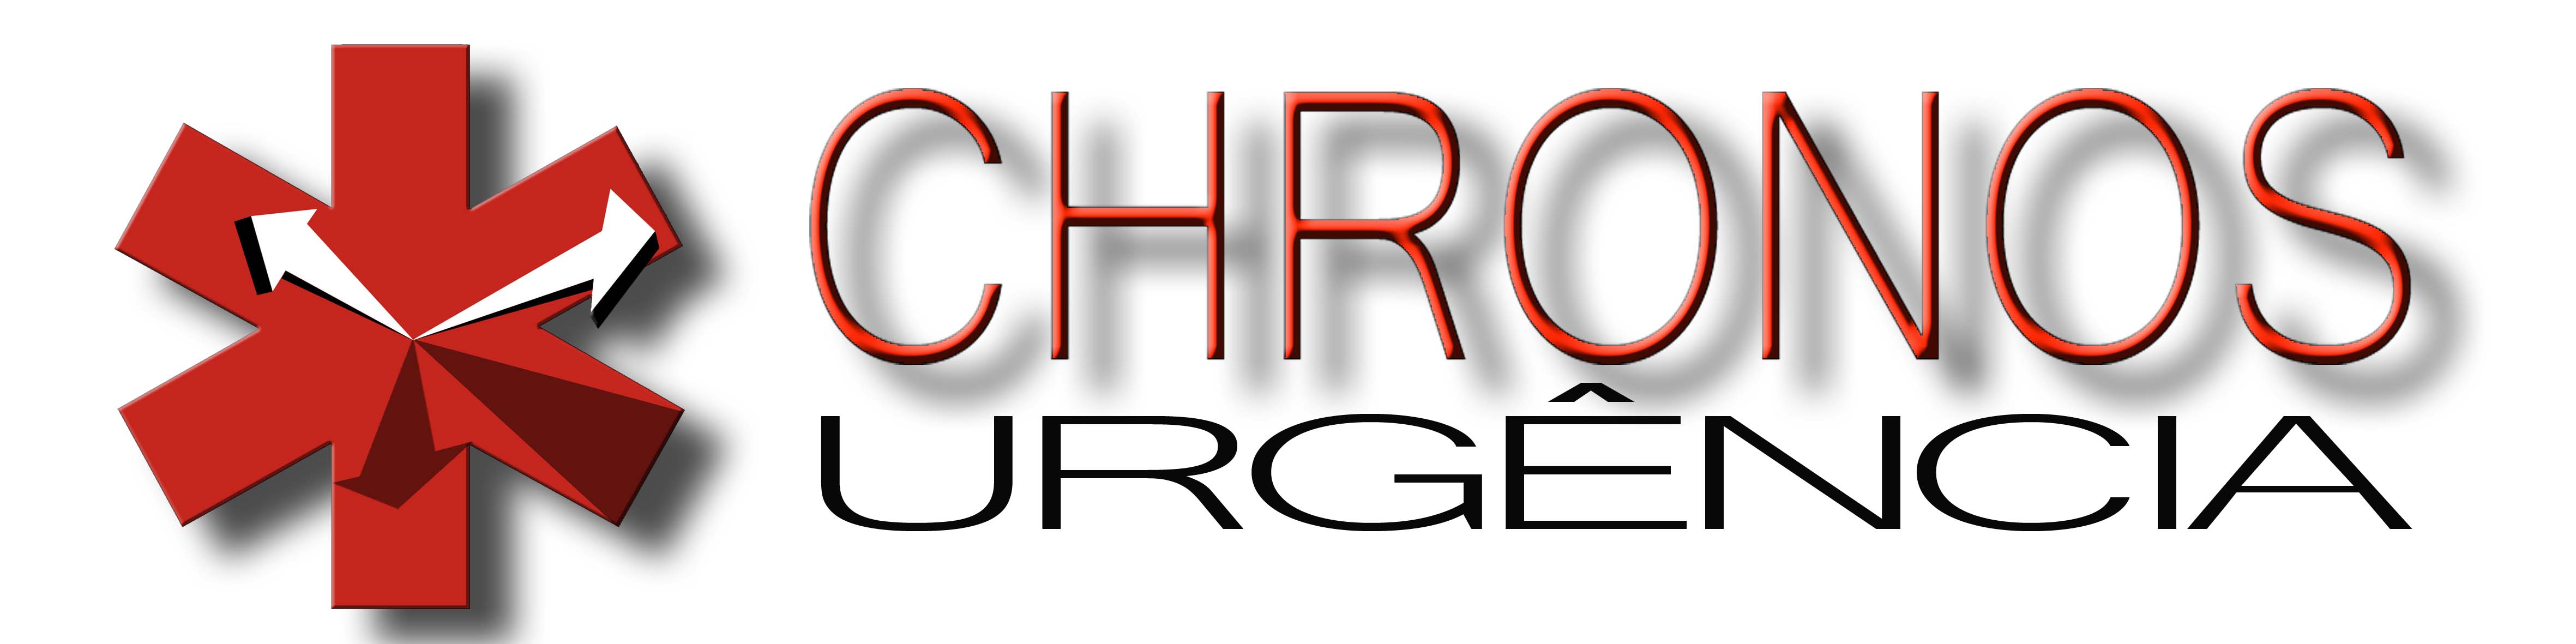 Revista Chronos Urgência